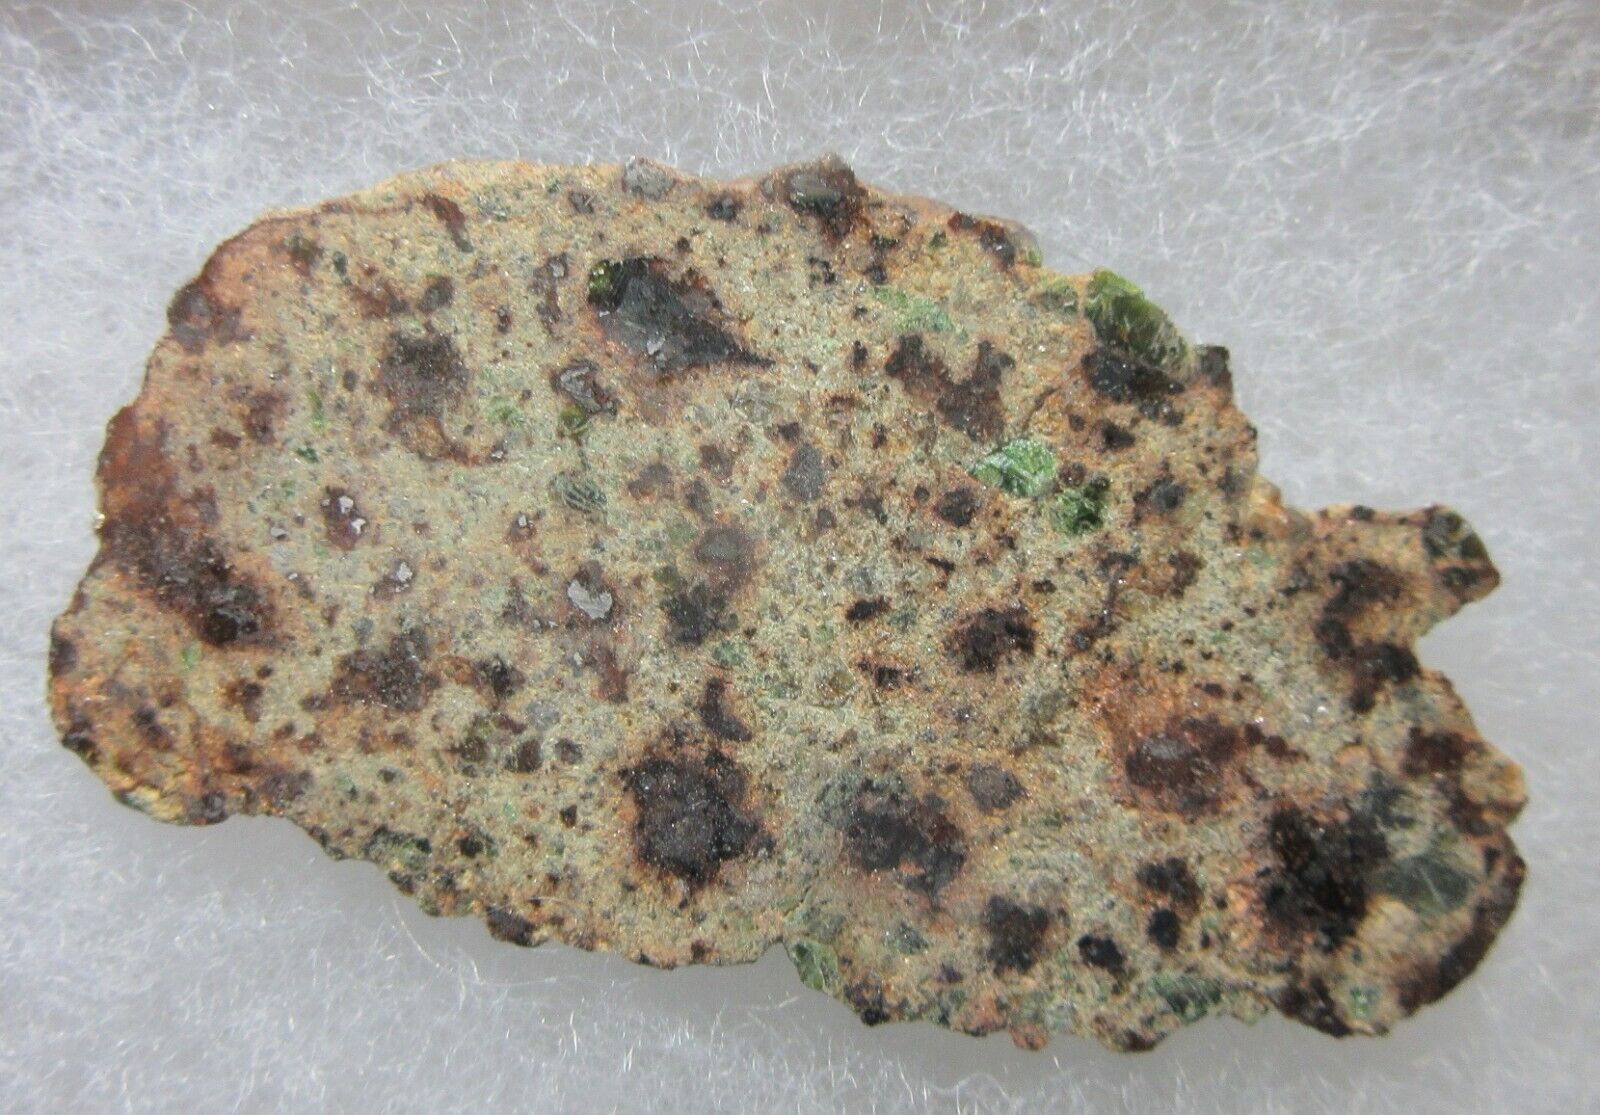 RARE, NWA 8251 Lodranite Meteorite, 8.99 grams